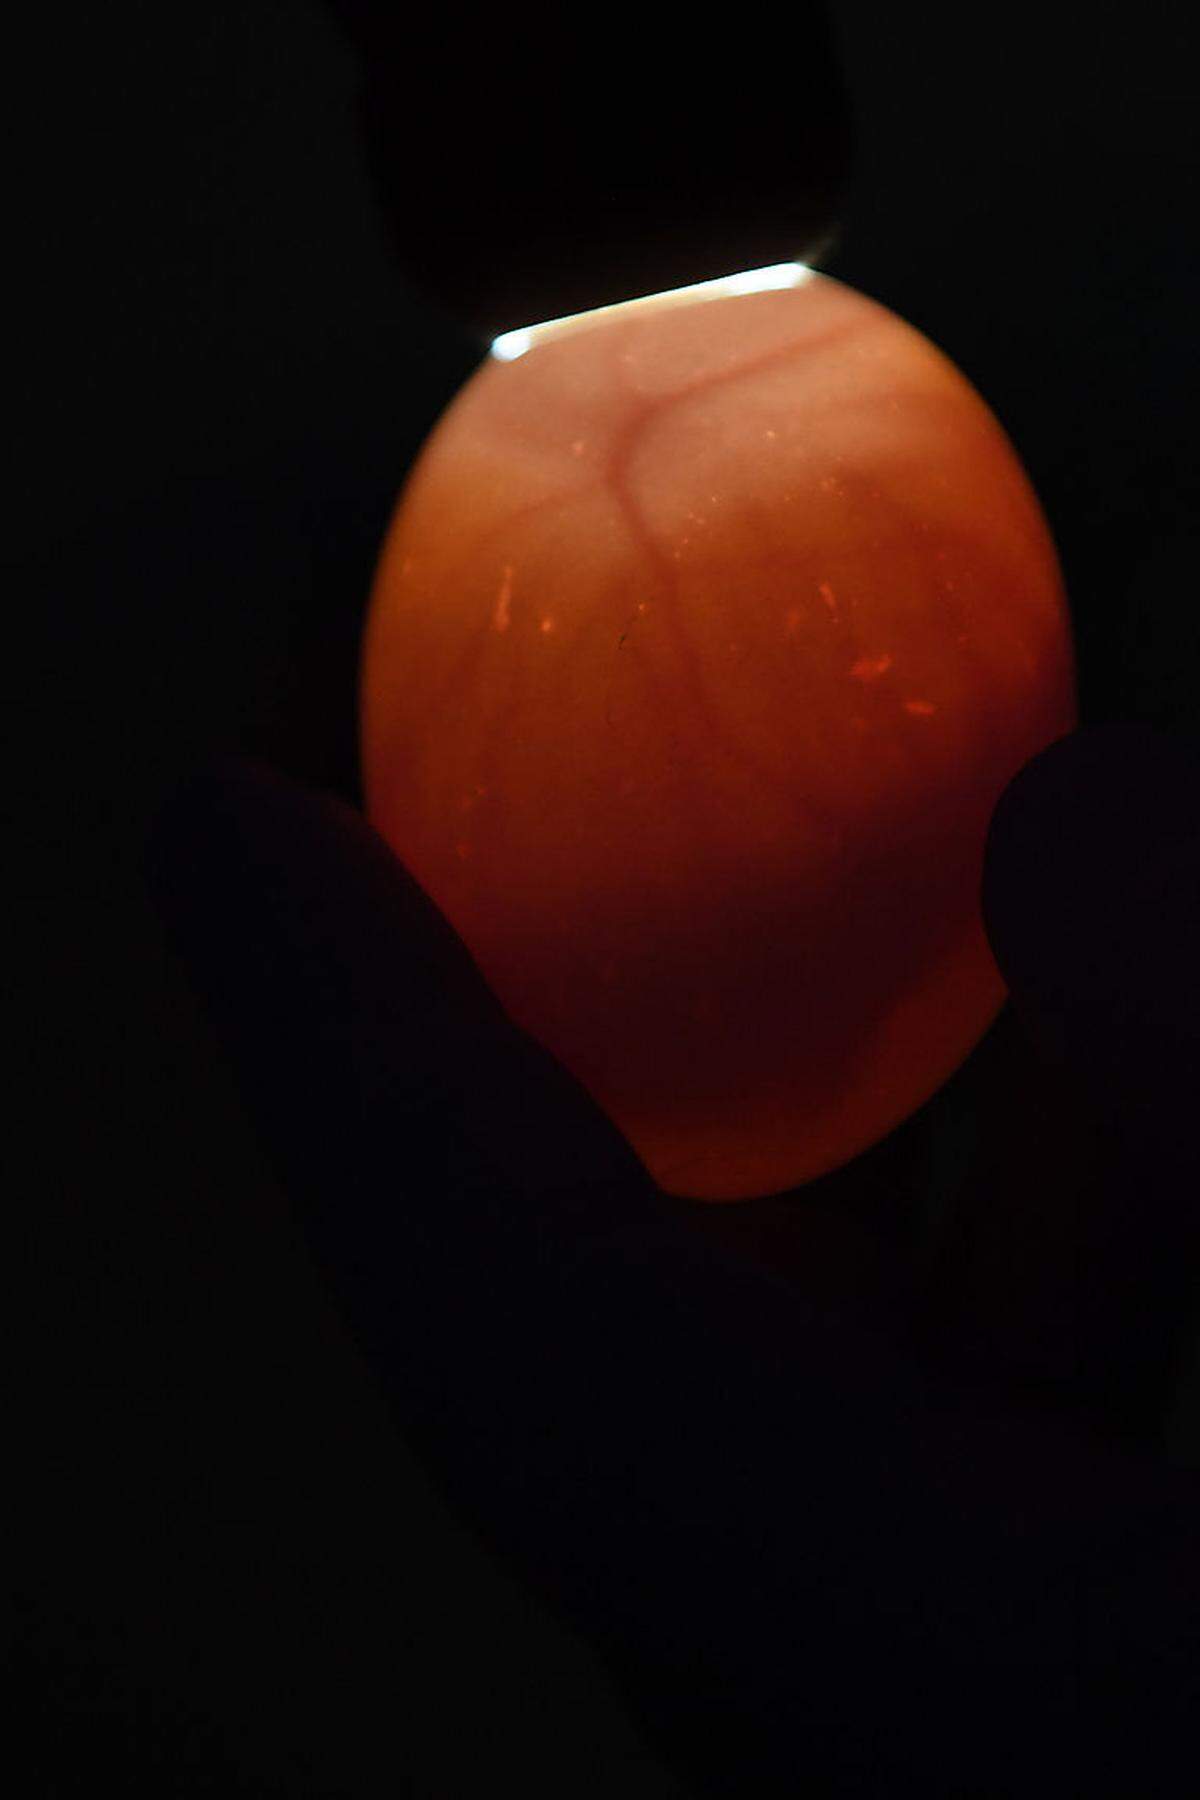 Gelangt mit den Proben das Virus ins Ei, kann sich der Embryo nicht entwickeln. Das können die Experten beobachten, indem sie die Eier mit UV-Licht durchleuchten. (Im Bild: ein bebrütetes Ei)